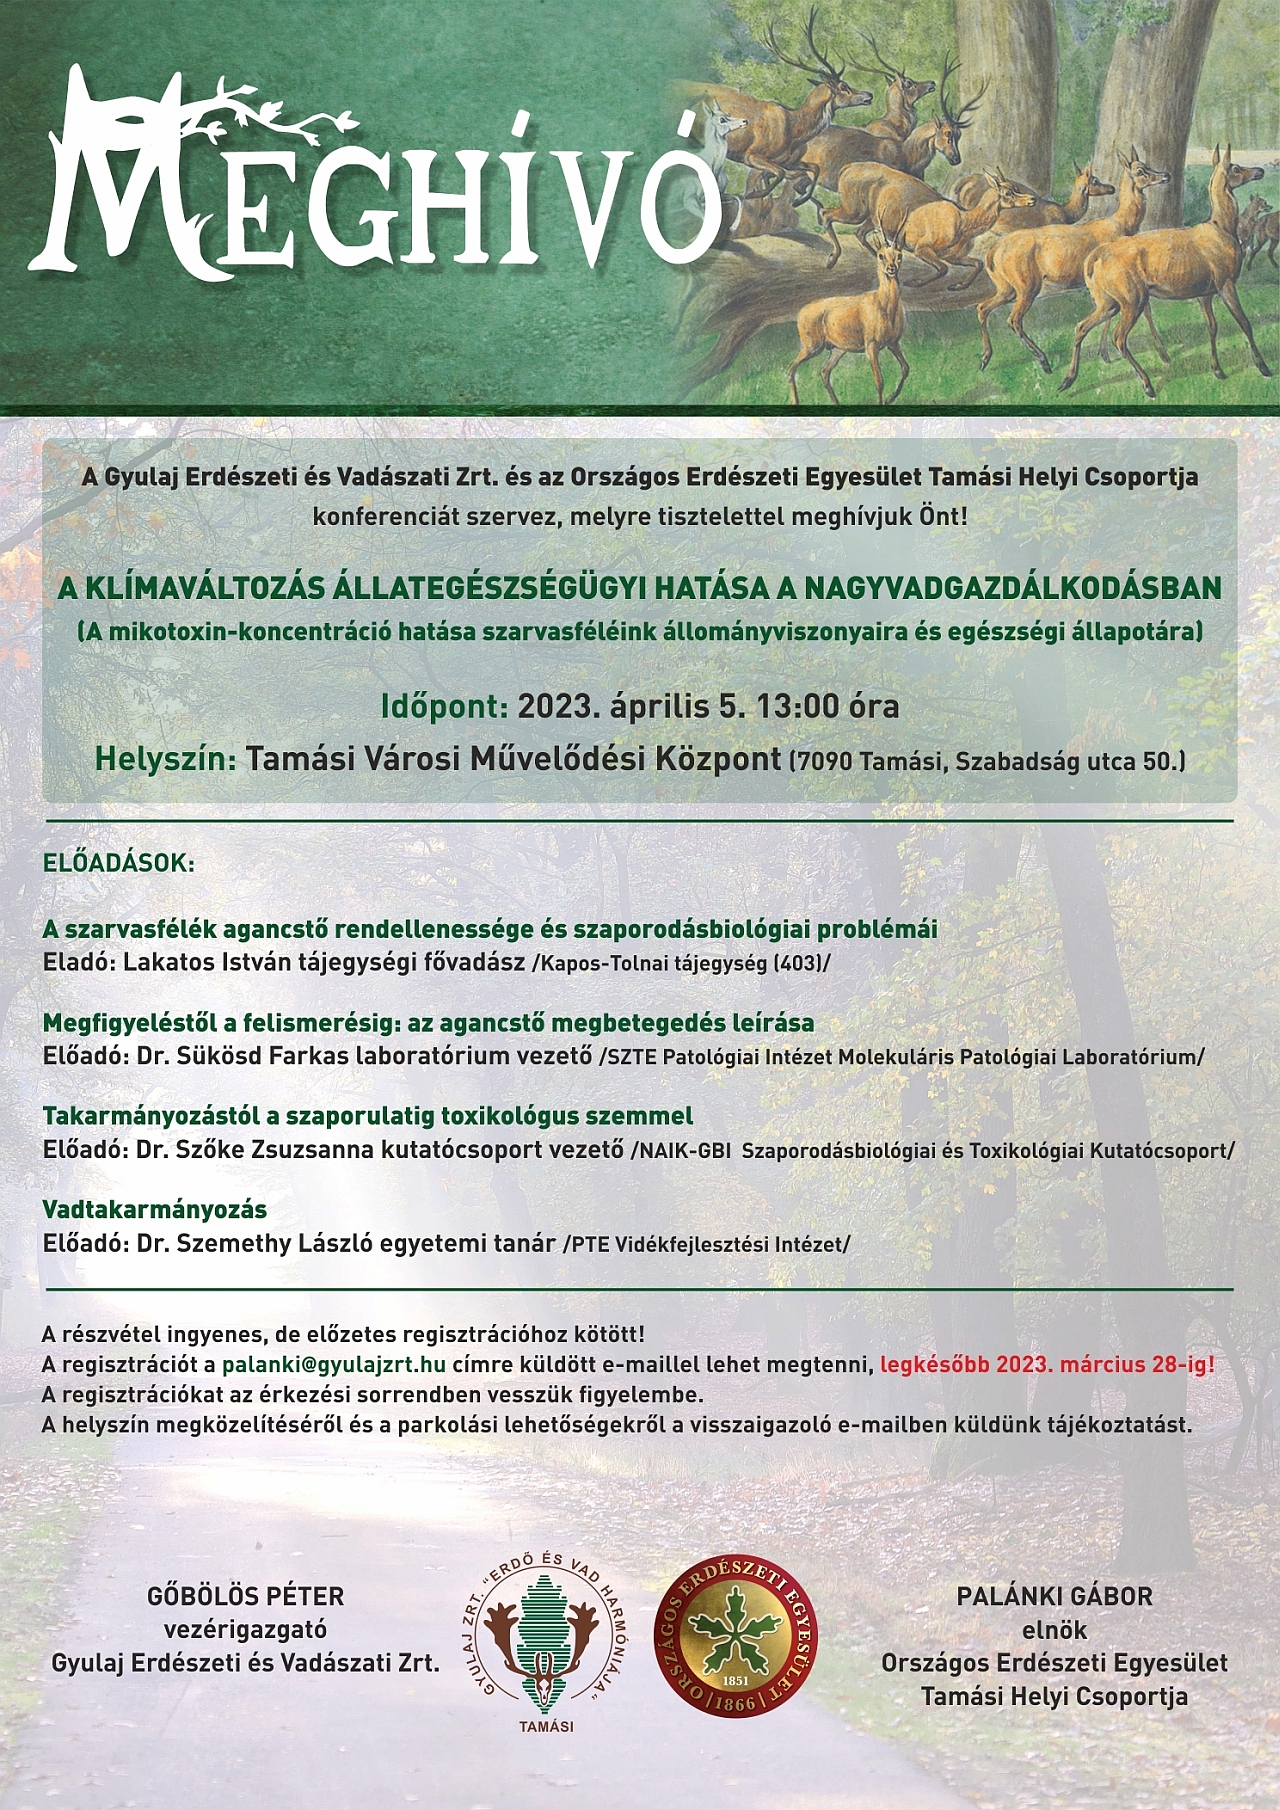 A klímaváltozás állategészségügyi hatása a nagyvadgazdálkodásban - a Gyulaj Zrt. és az OEE Tolna megyei H. Cs. szakmai rendezvénye  - konferencia    